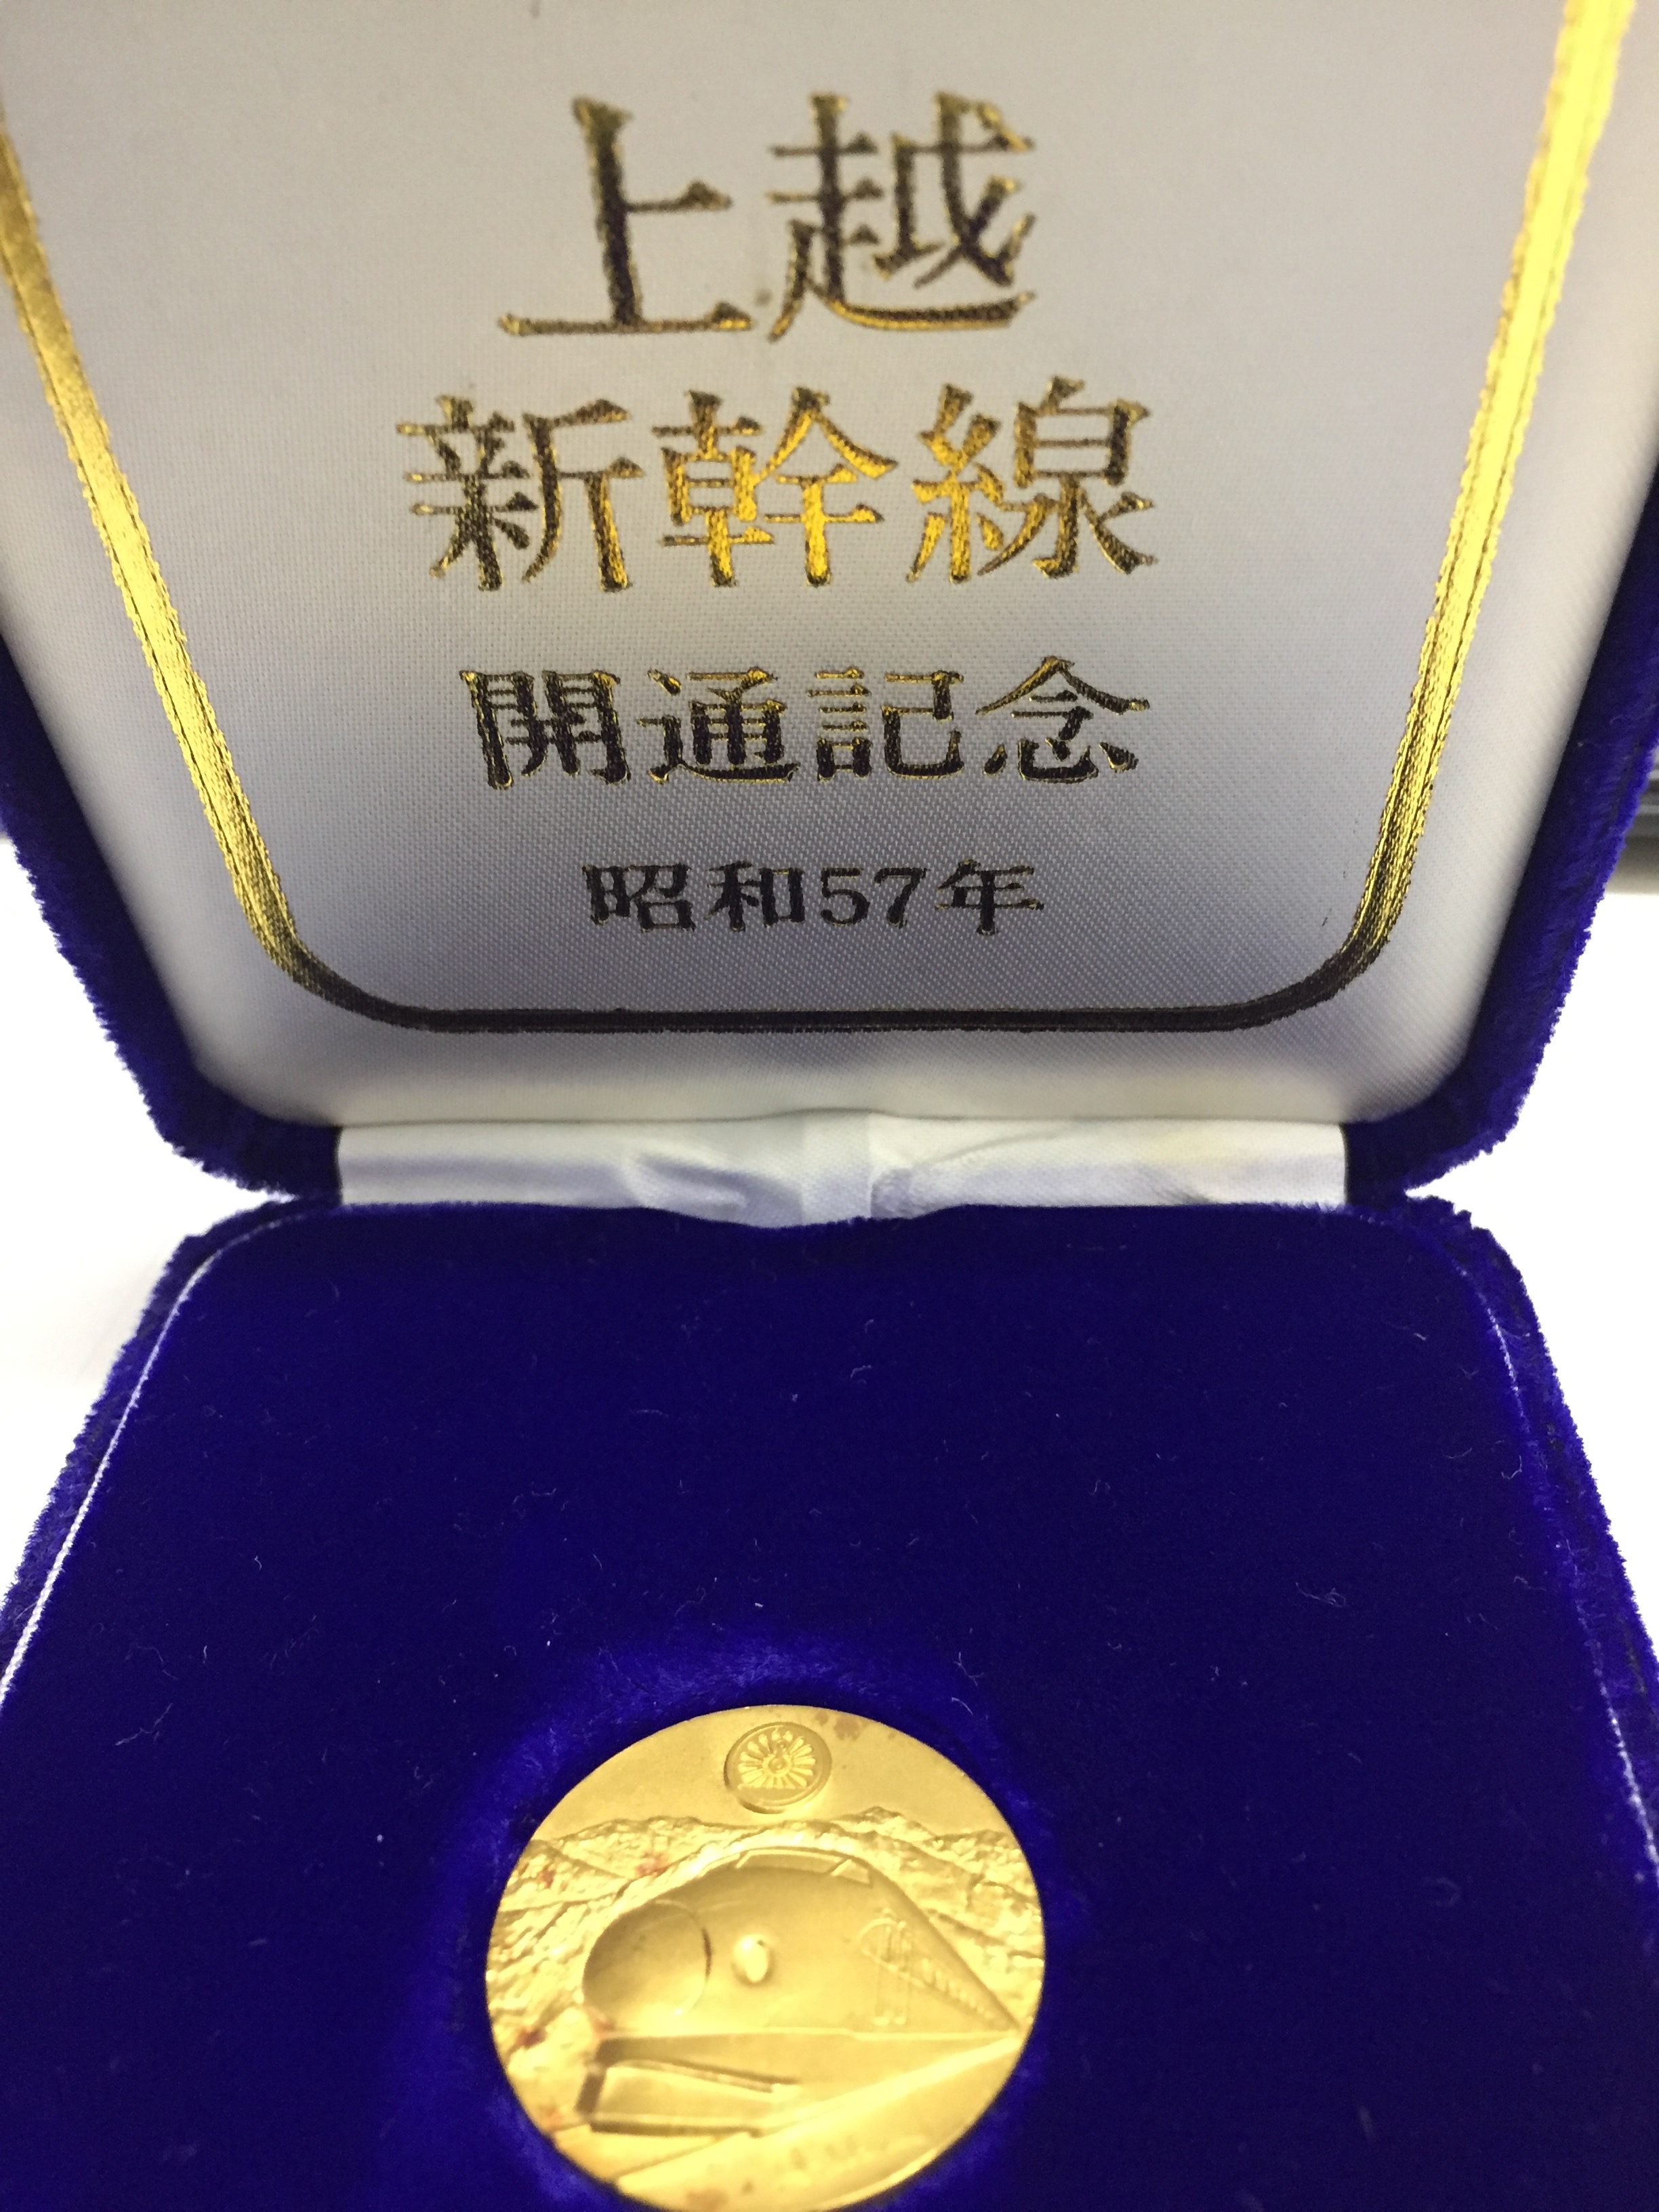 超激得在庫 上越新幹線記念メダルの通販 by yasuro21's shop｜ラクマ